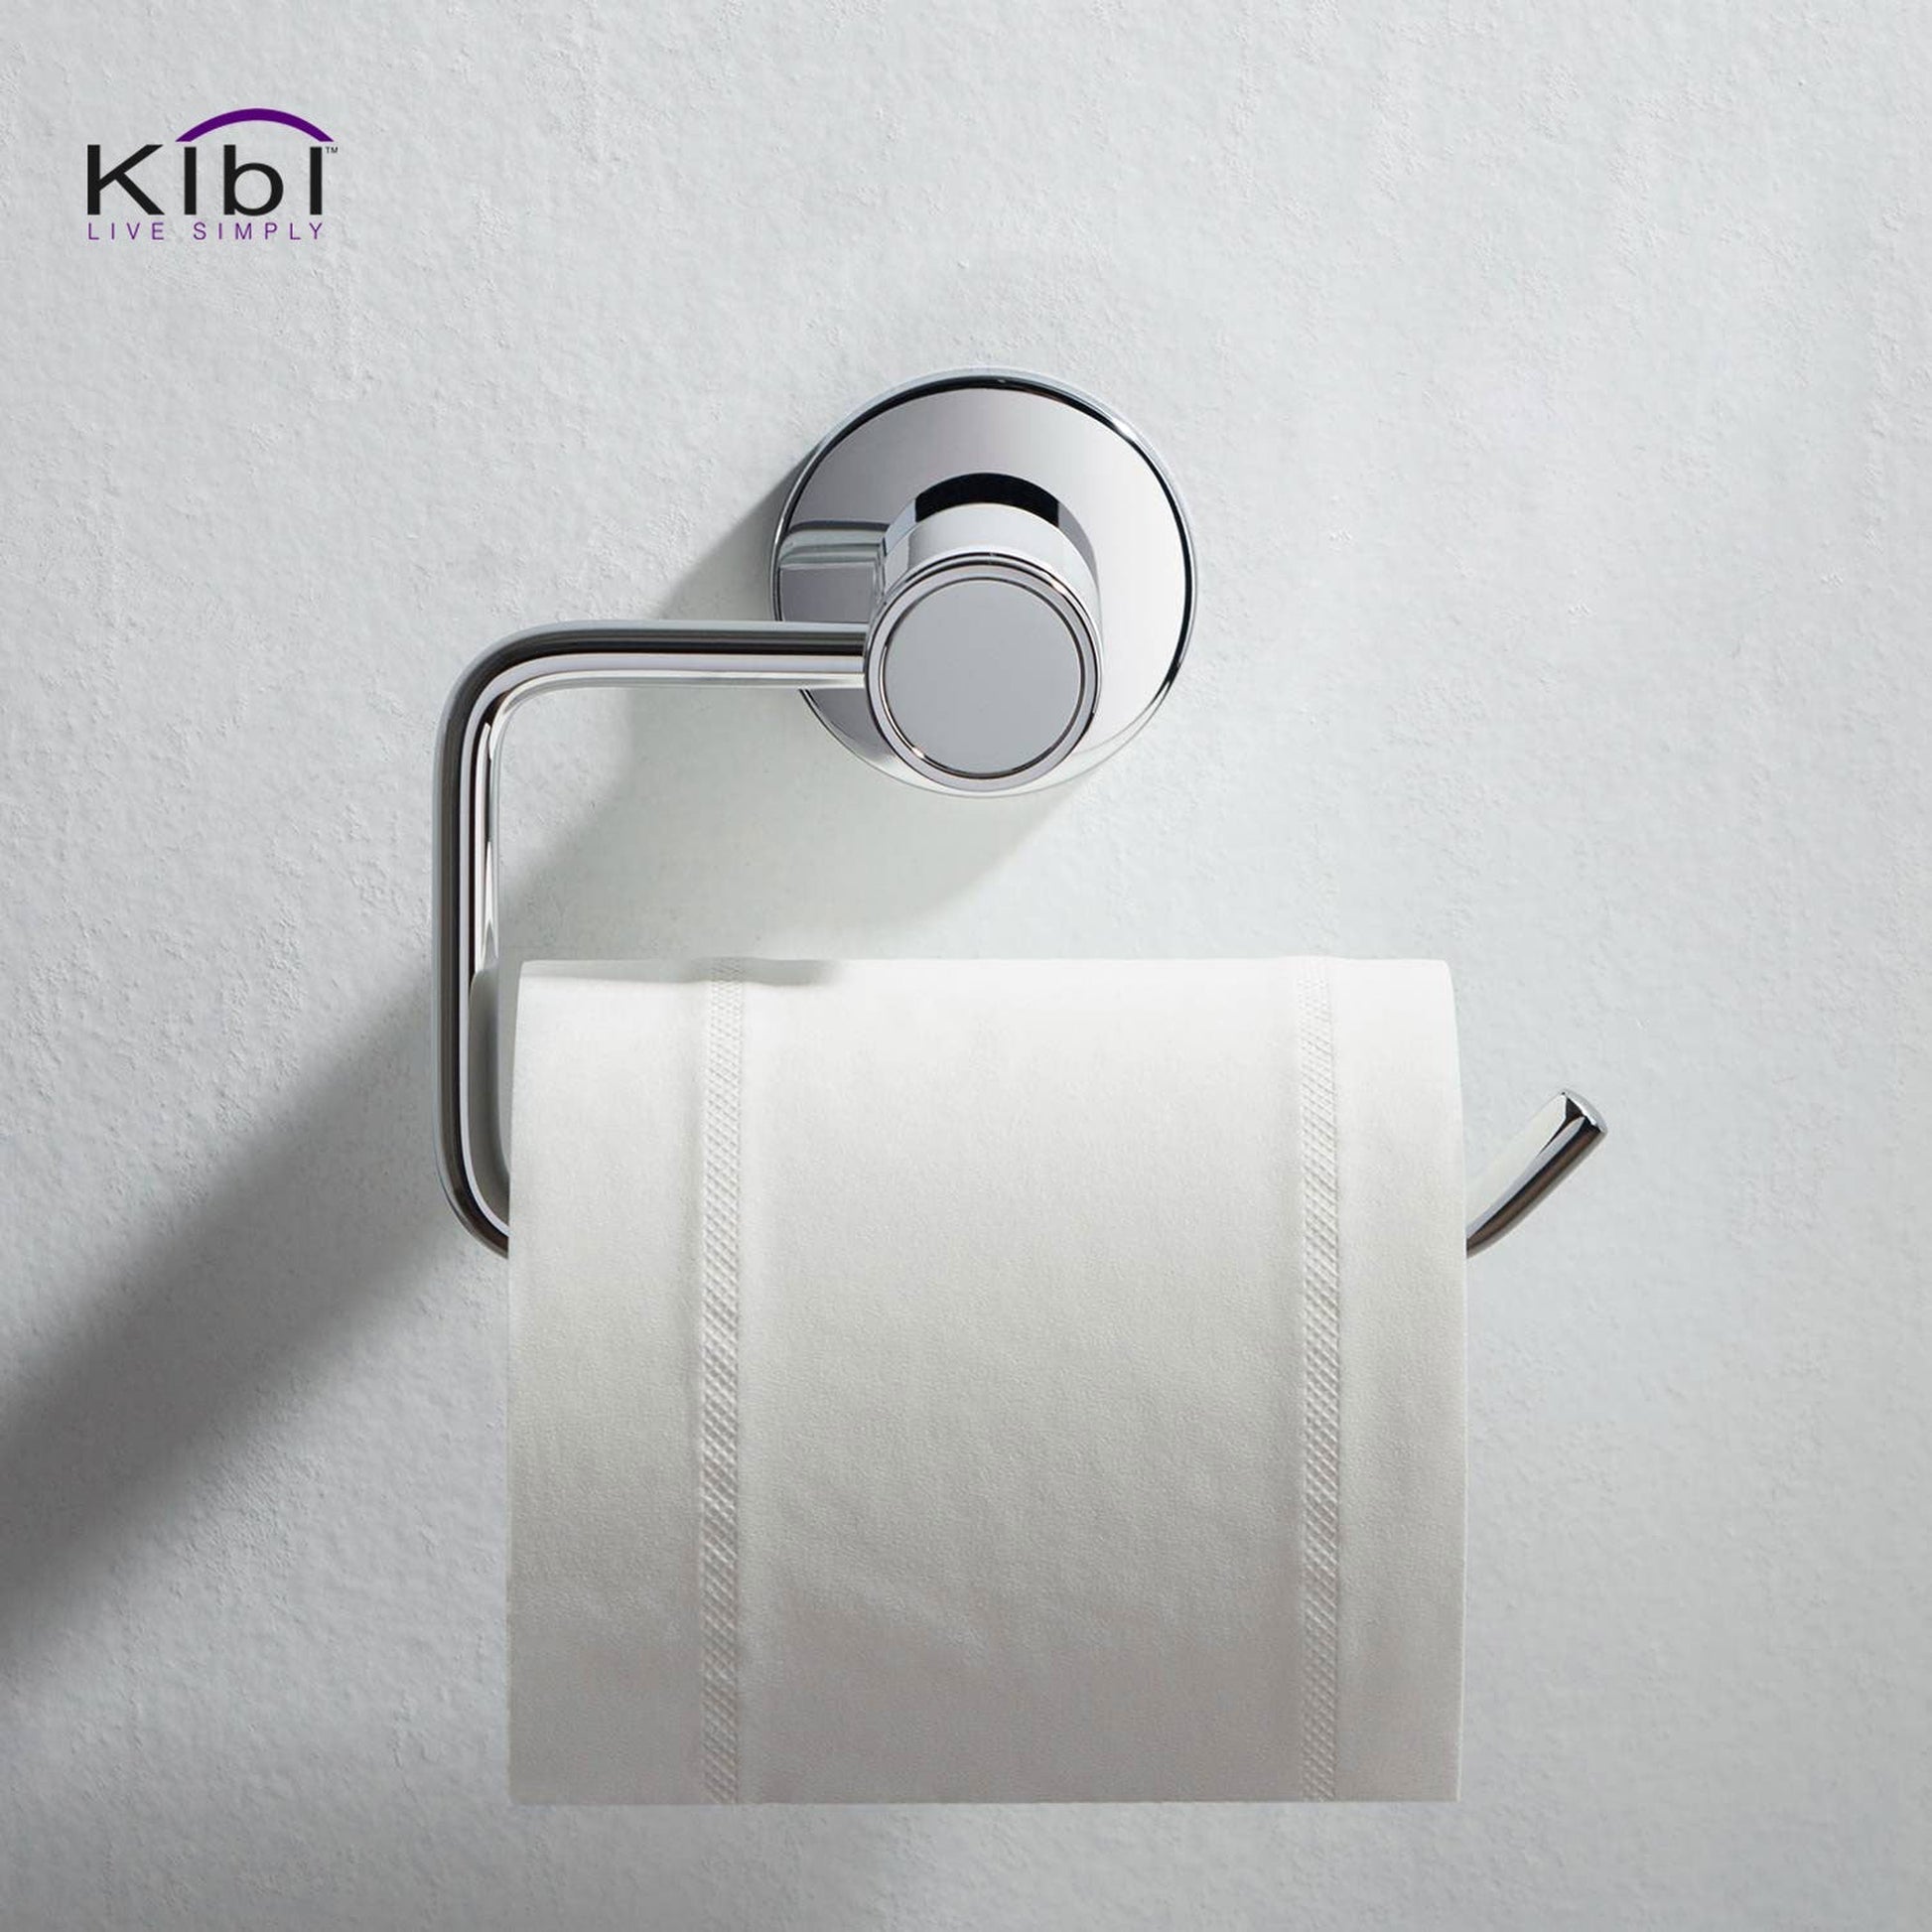 KIBI Abaco Bathroom Tissue Holder in Chrome White Finish